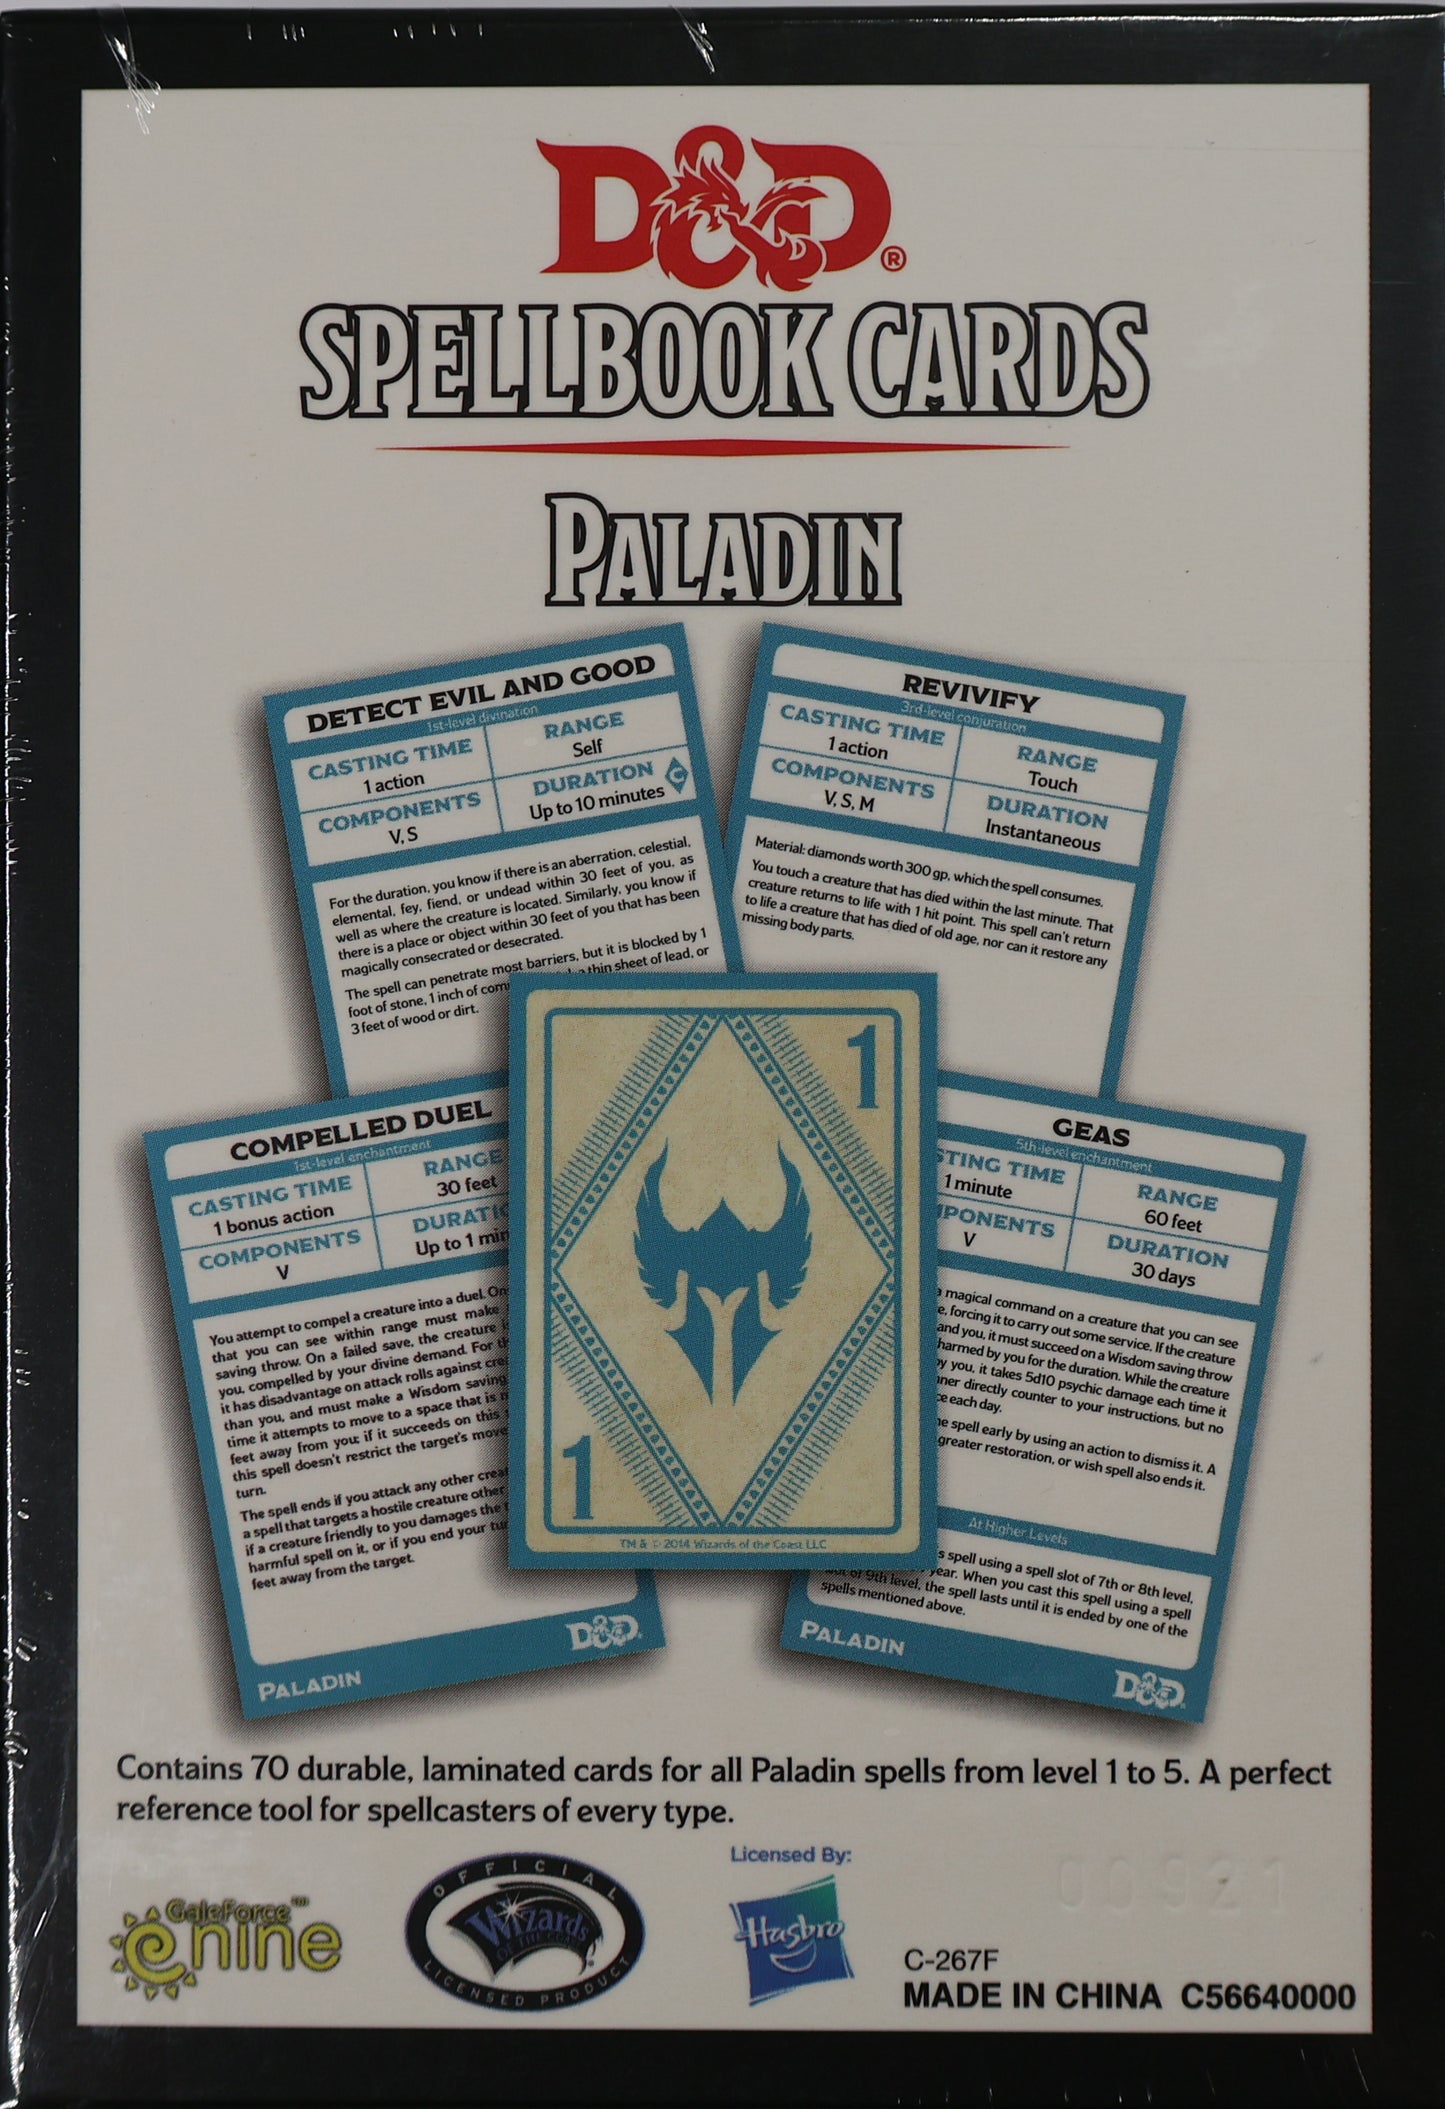 Spellbook Cards Paladin